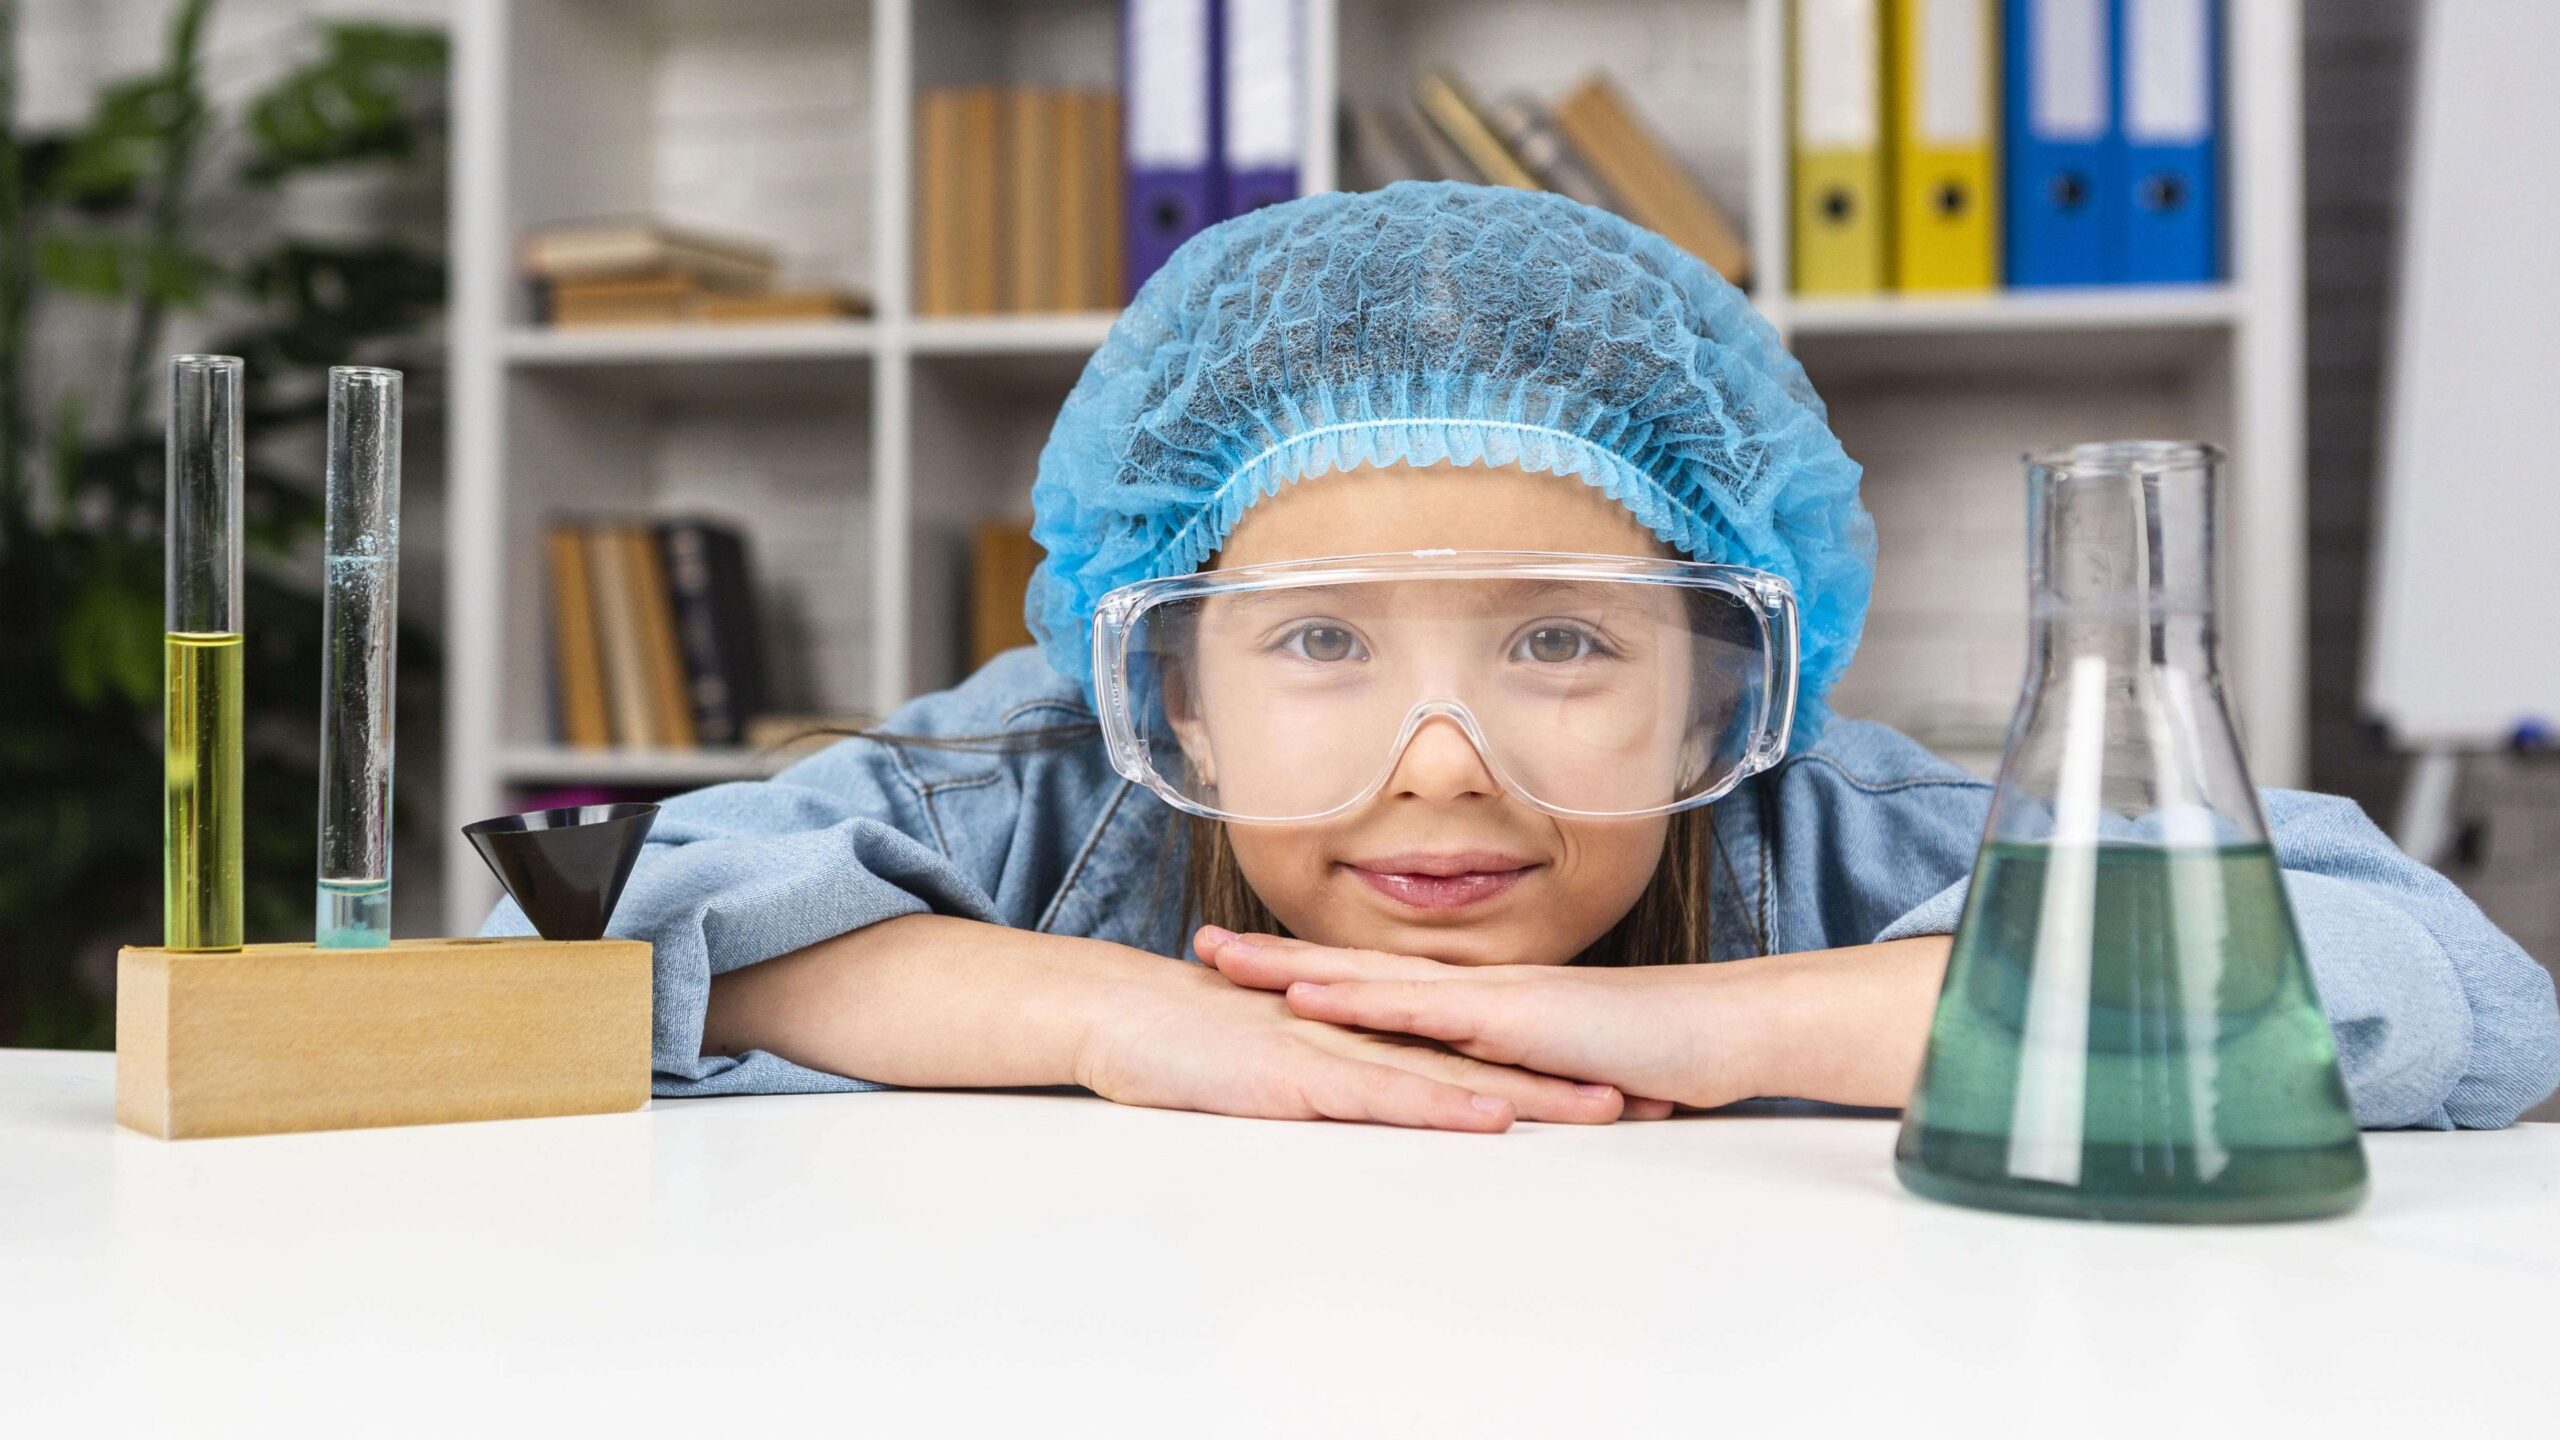 4 thí nghiệm khoa học thú vị để con thử làm tại nhà | #E2xTwinkl - E2 Talk